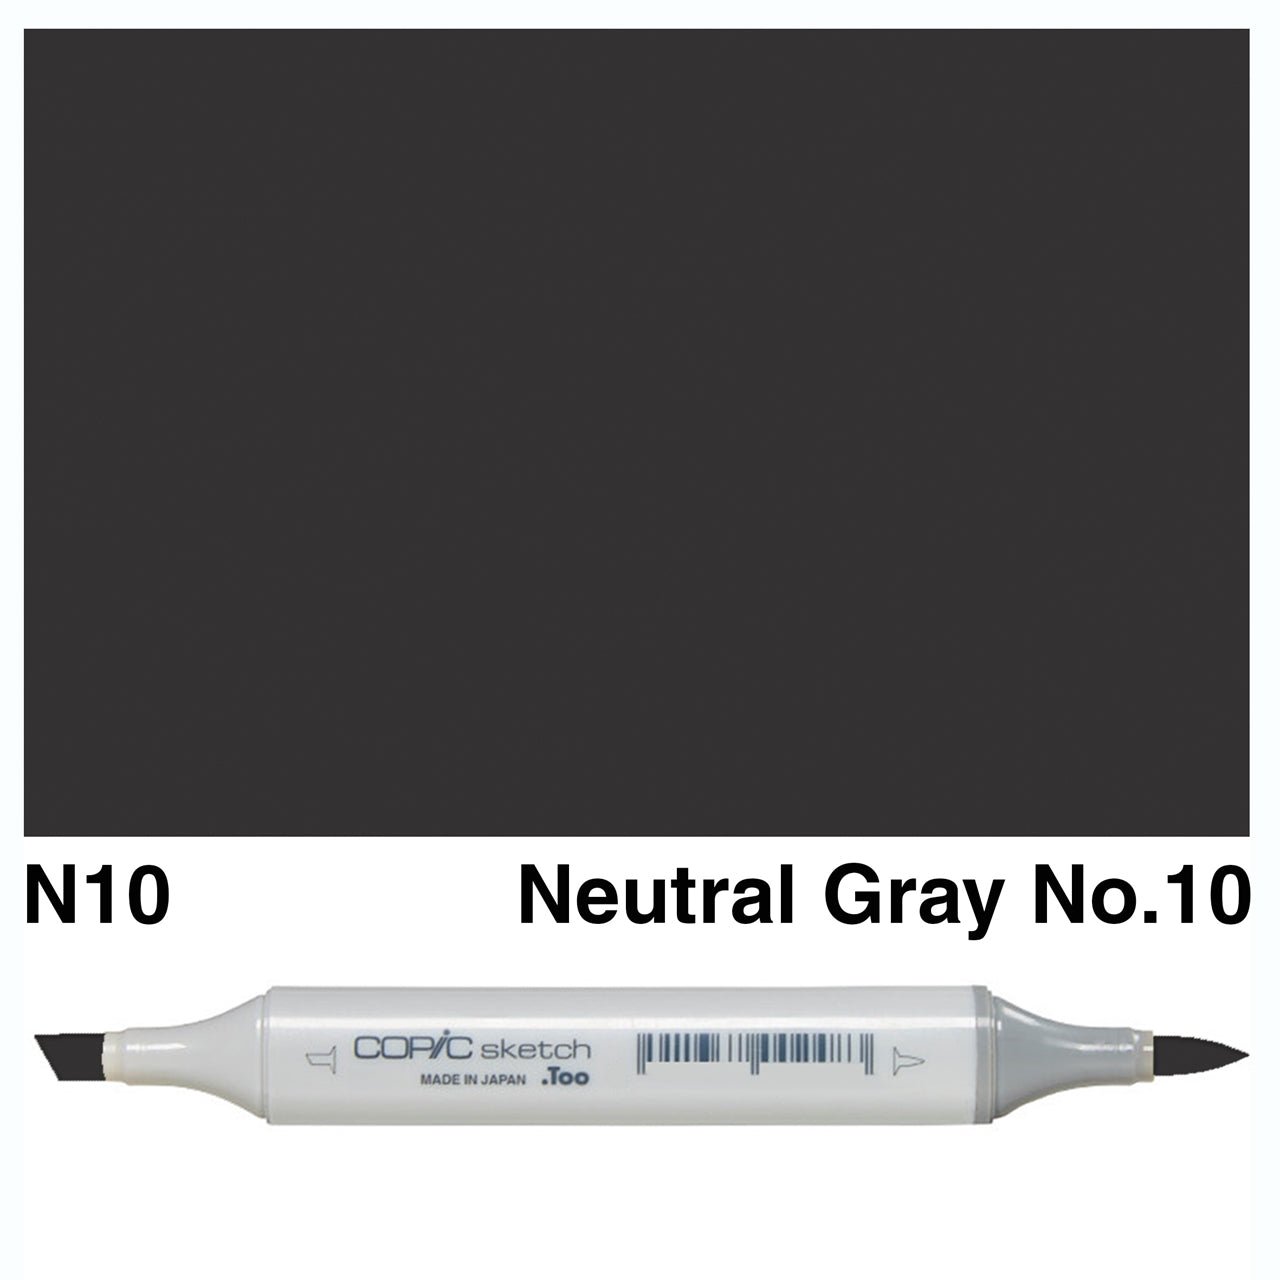 Copic Sketch N10 Neutral Gray No.10 - theartshop.com.au